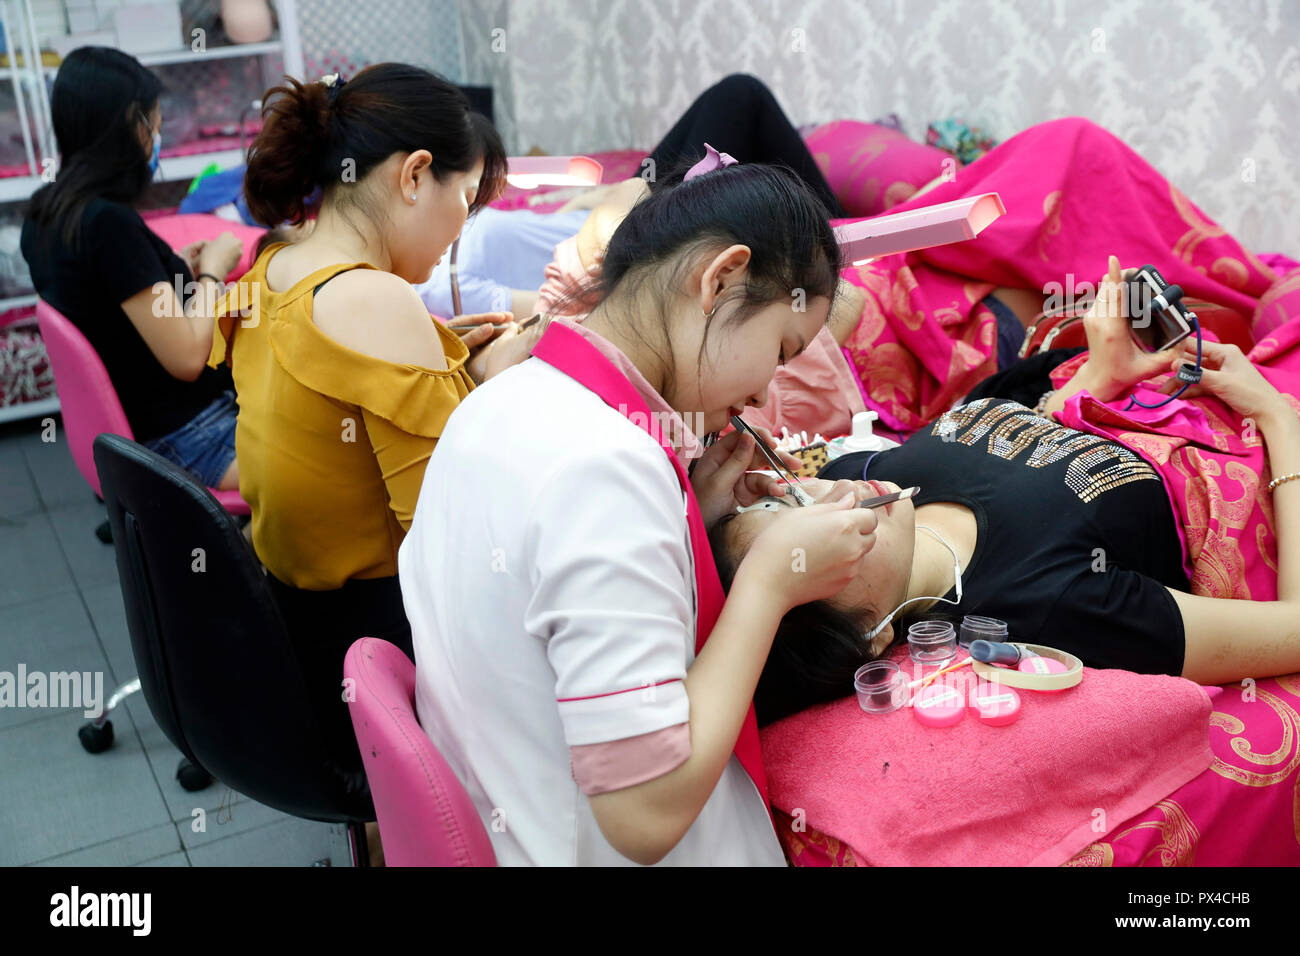 Vietnamese beauty salon. Beautician applying extended eyelashes to woman. Ho Chi Minh City. Vietnam. Stock Photo